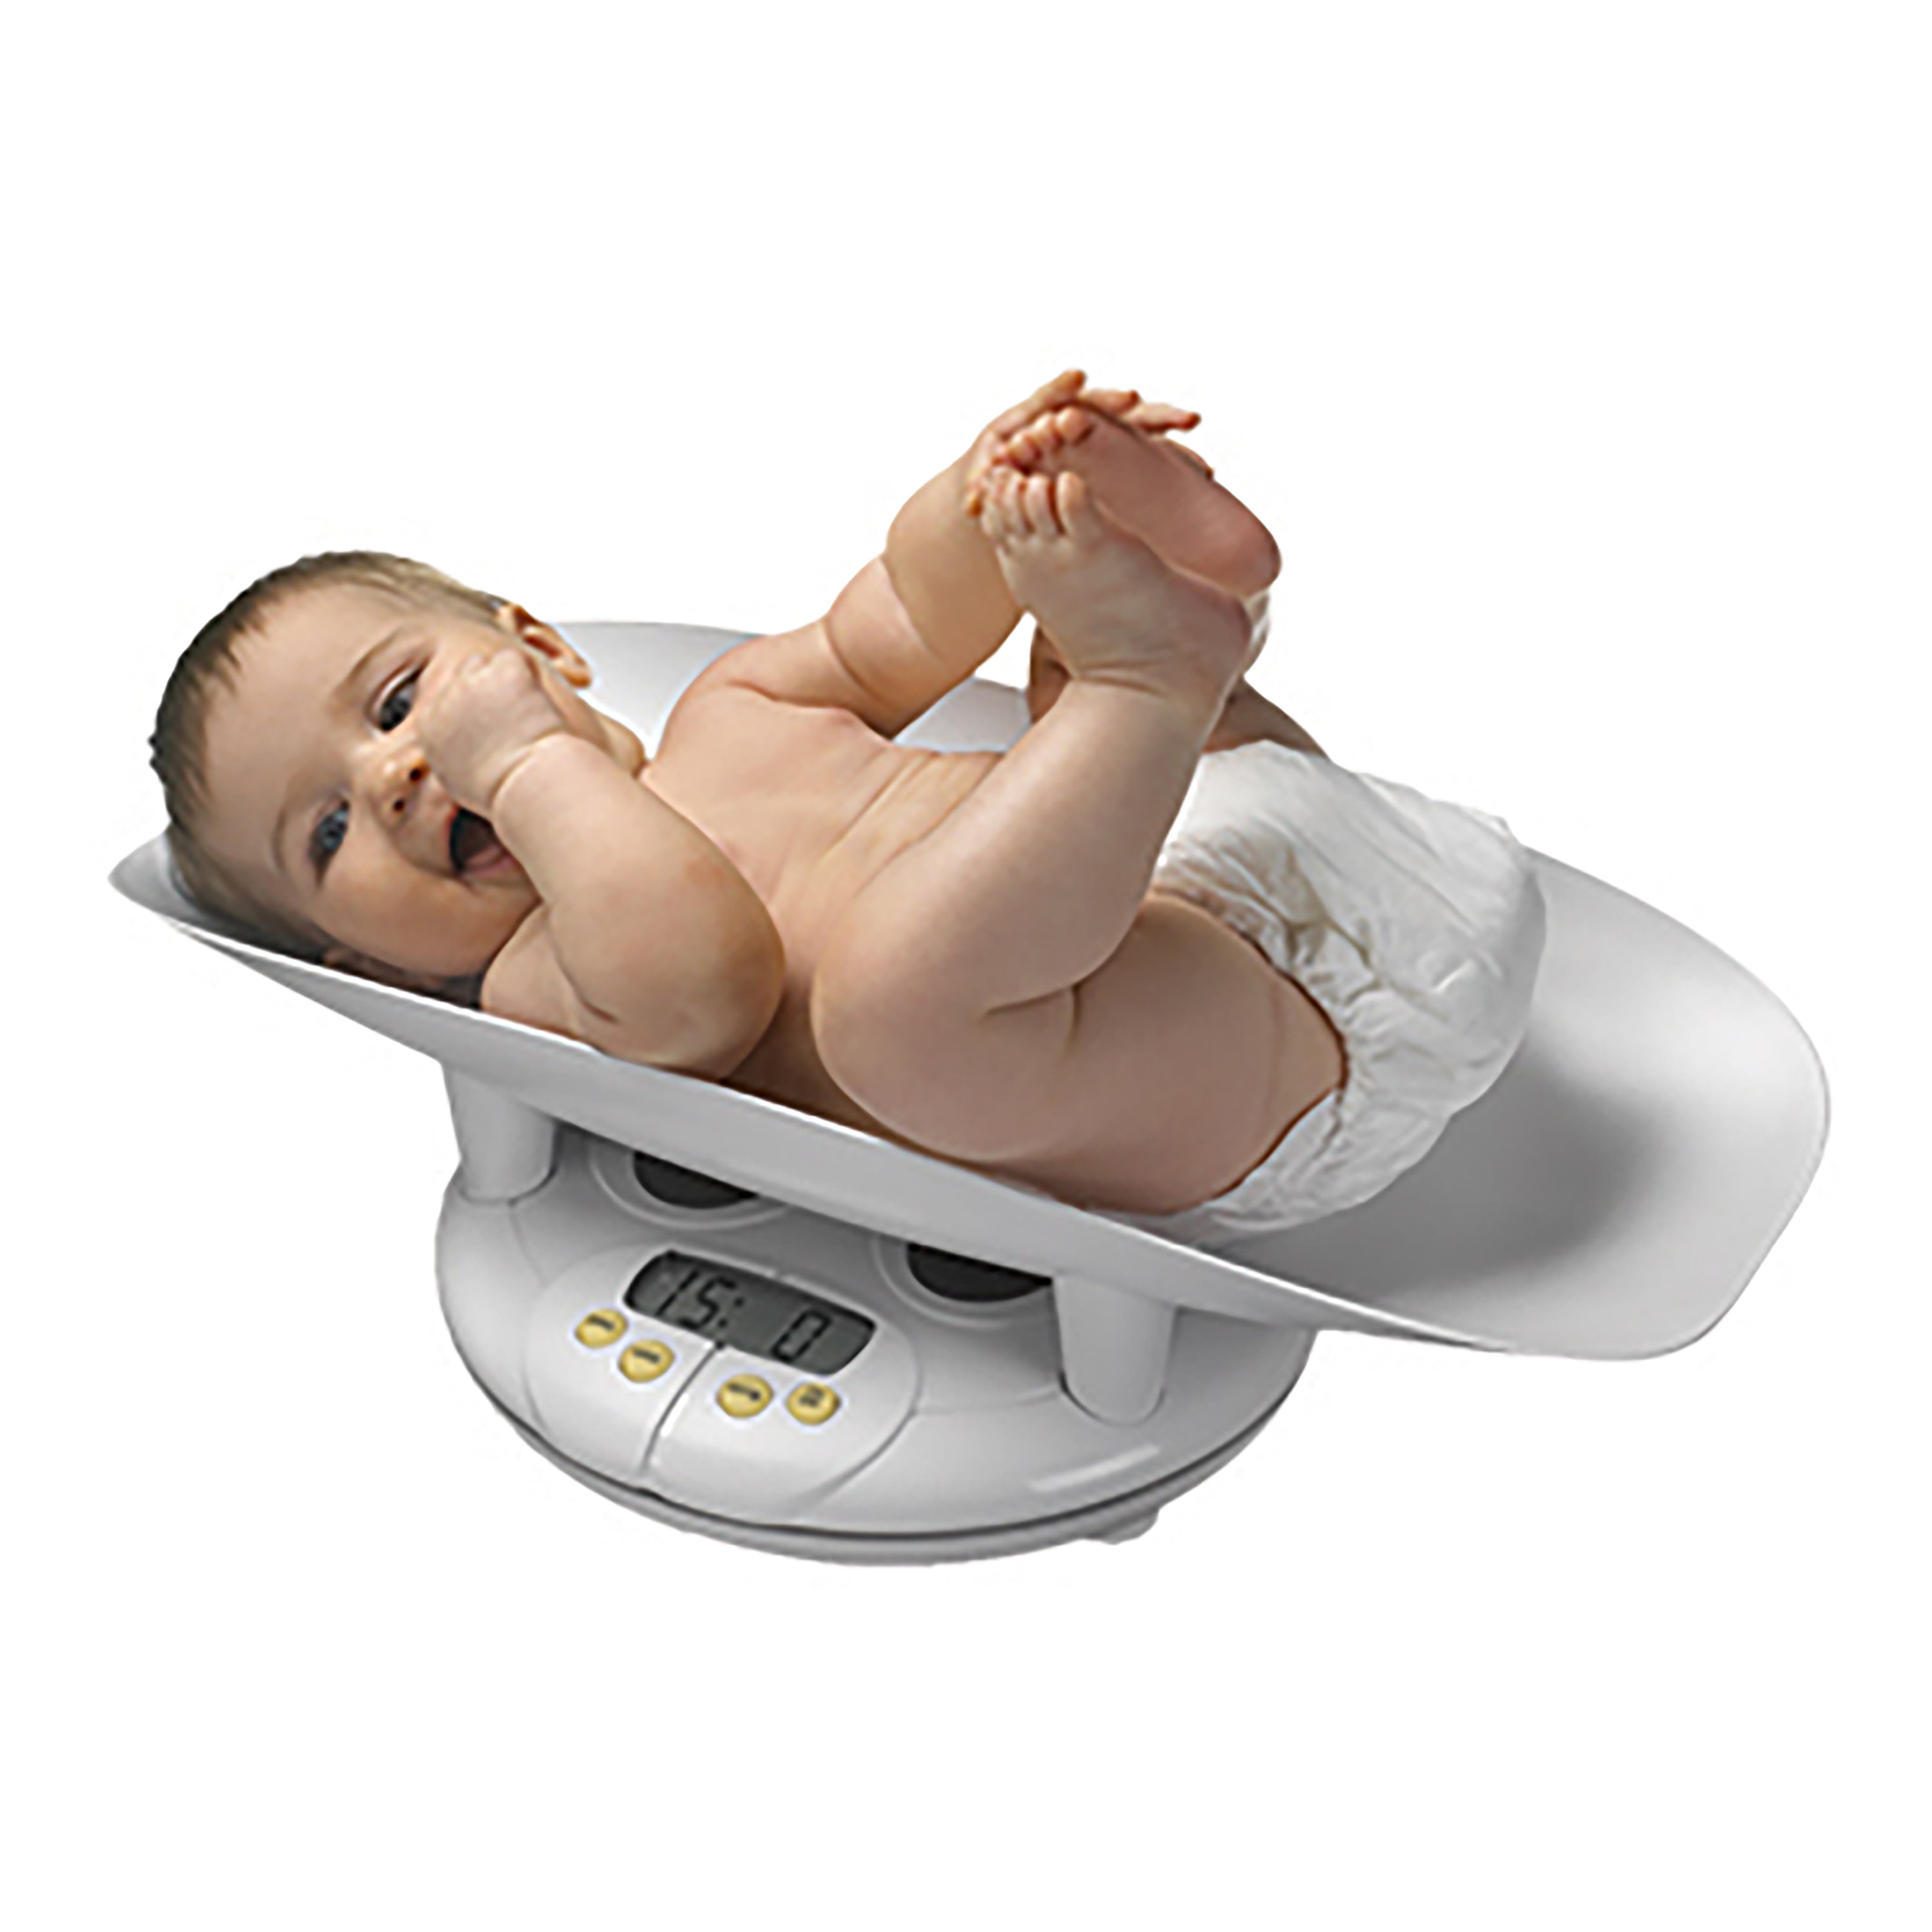 Baby Weighing Scale - WS032  Baby Weighing Scale - WS032